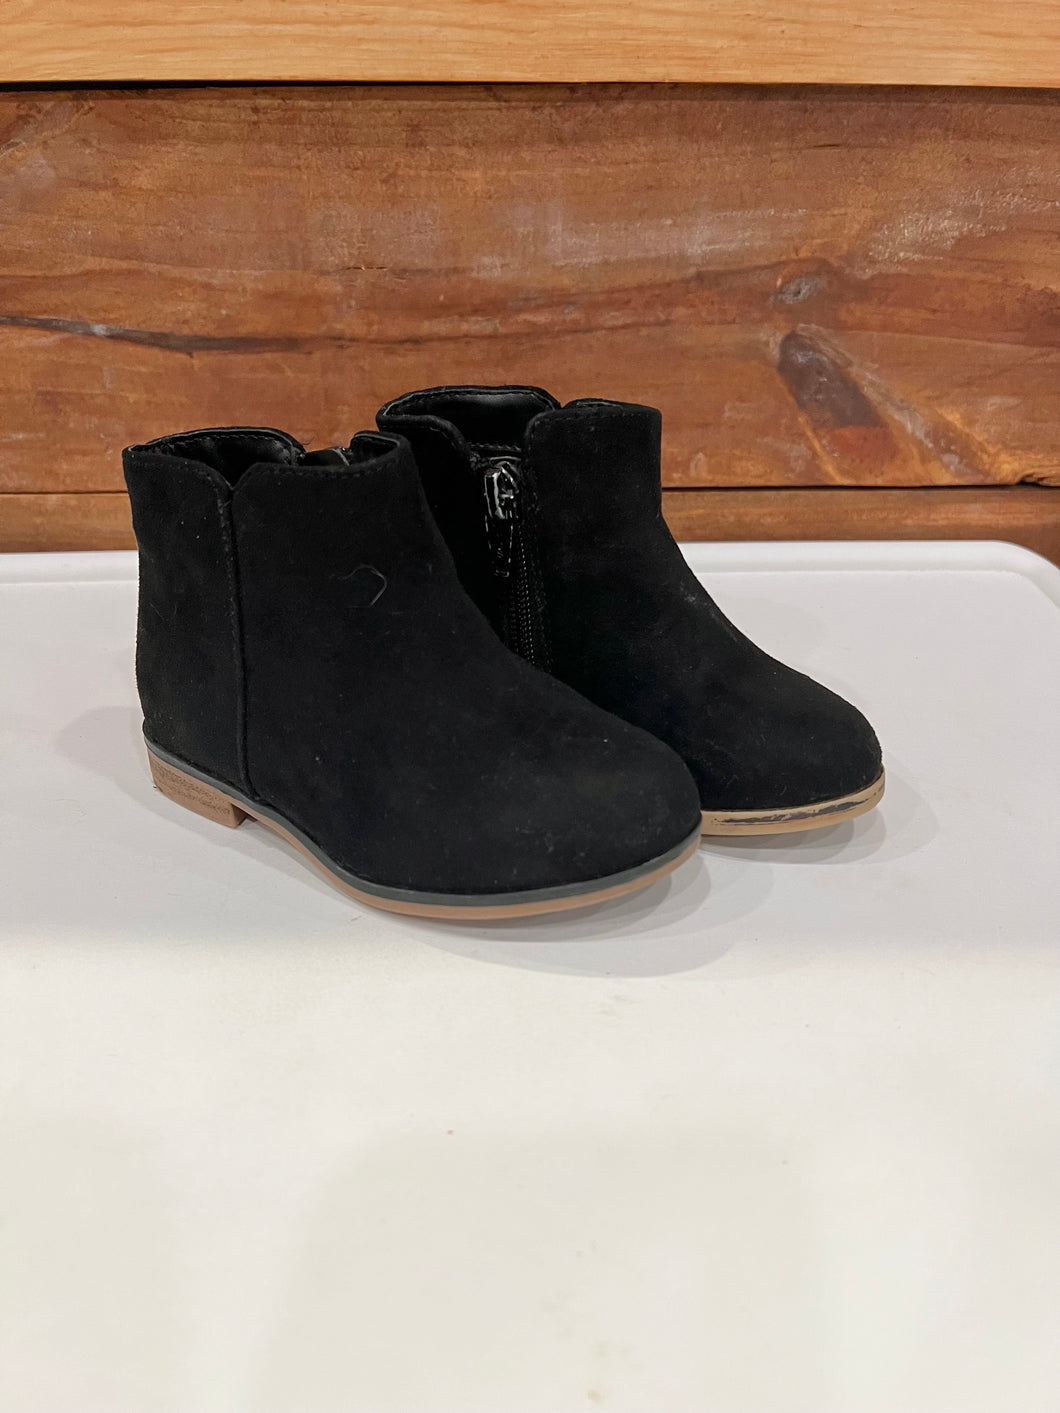 Cat & Jack Black Boots Size 6